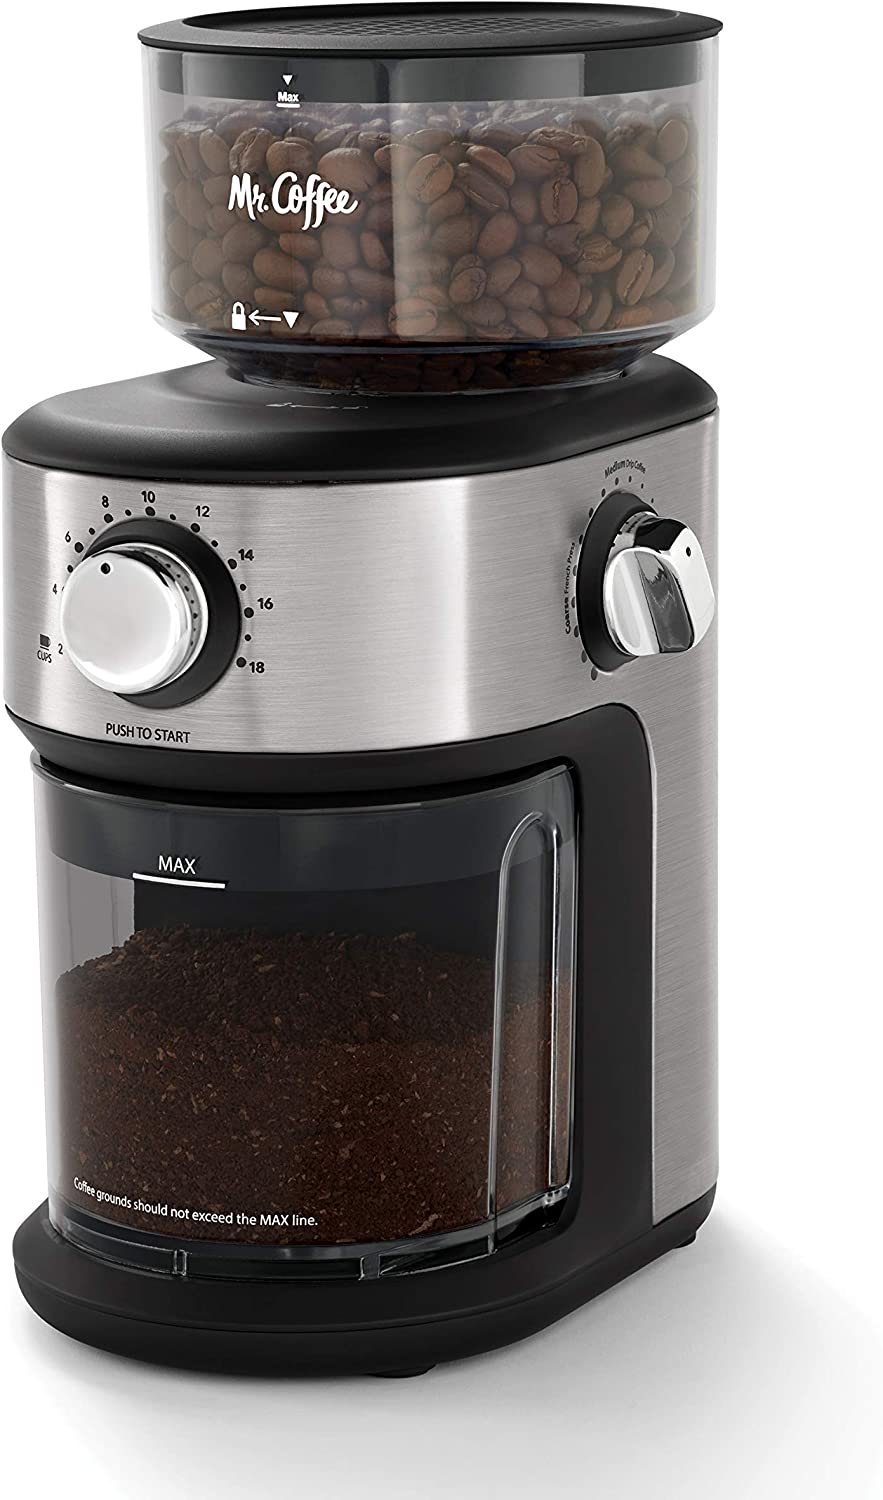 آسیاب قهوه مستر مدل Mr. Coffee Burr BVMC-BMG25- ارسال 20 الی 25 روز کاری